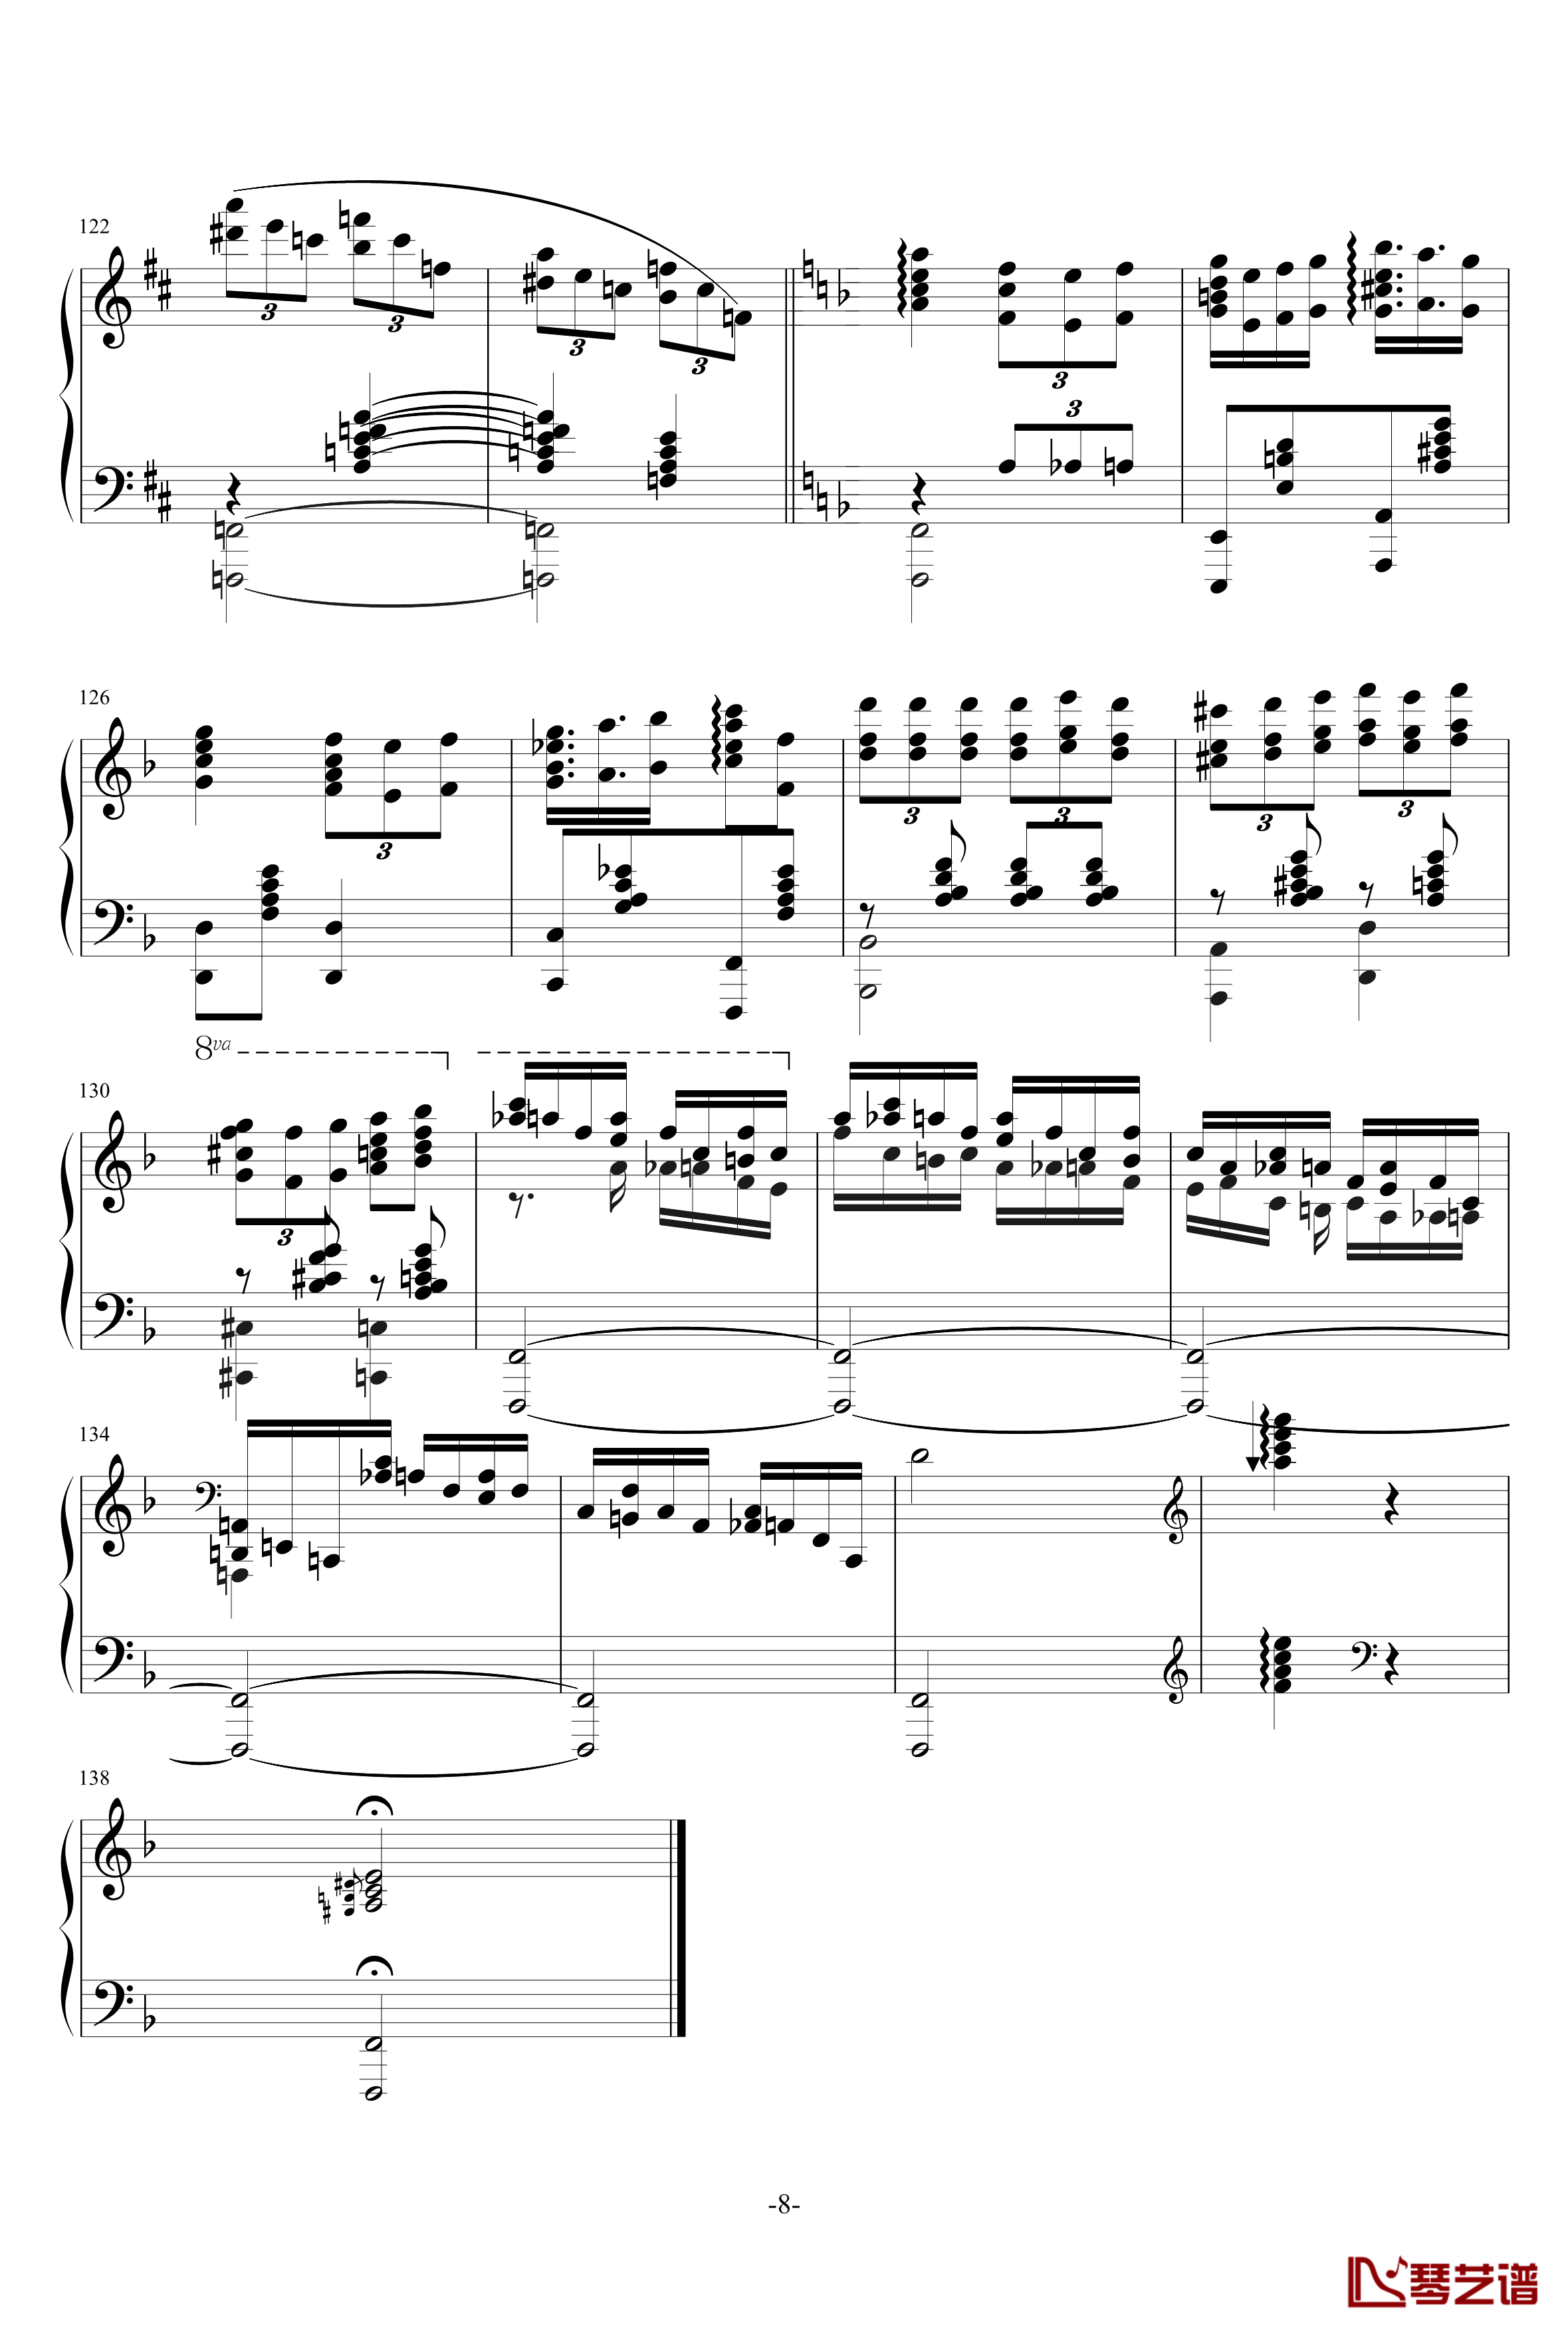 旋转木马上的小丑钢琴谱-DoubleE No4-尬哥8